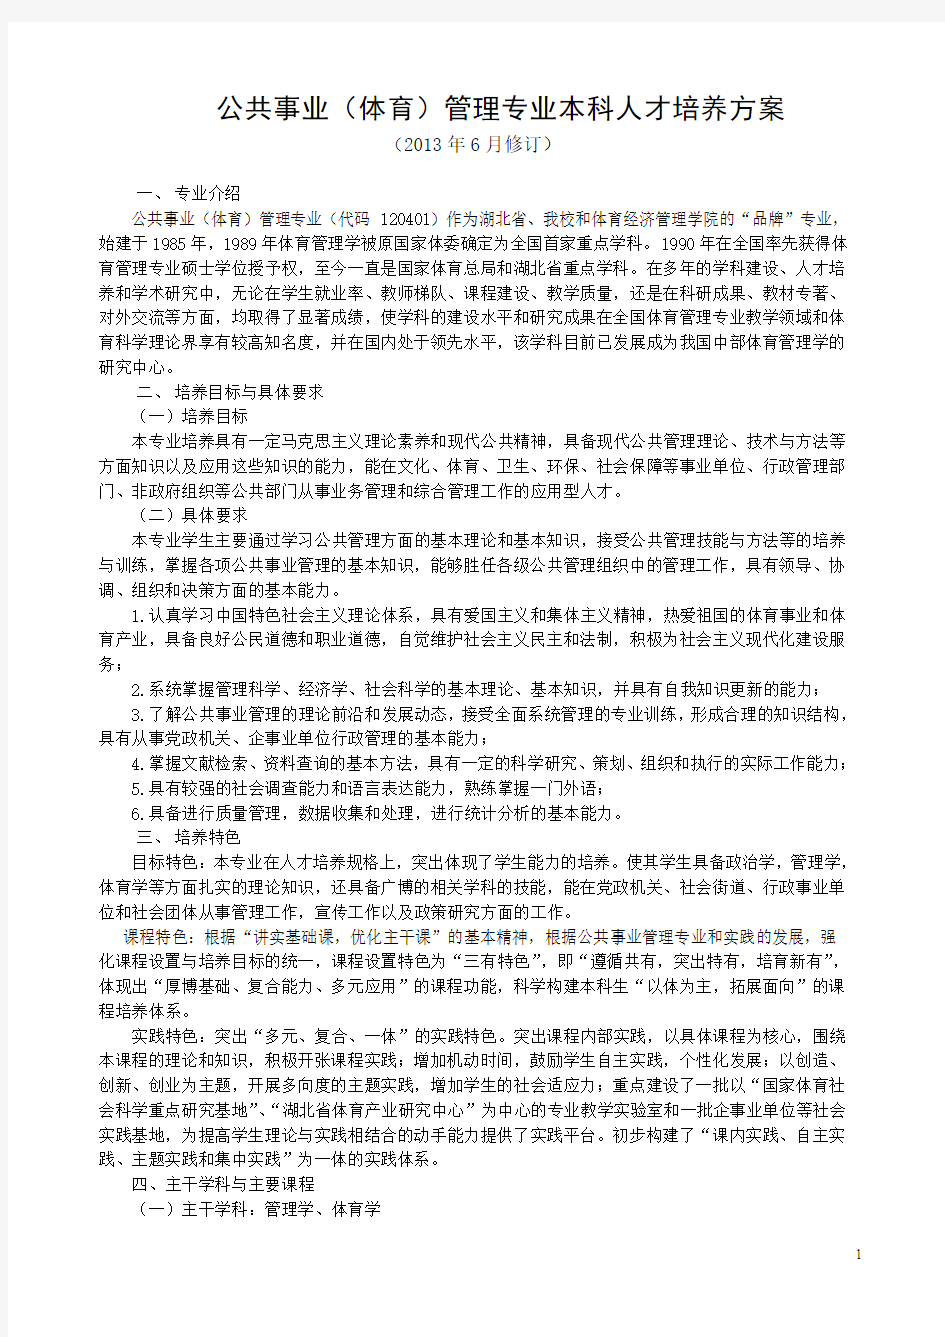 武汉体育学院(2013年修订)公共事业管理专业培养方案